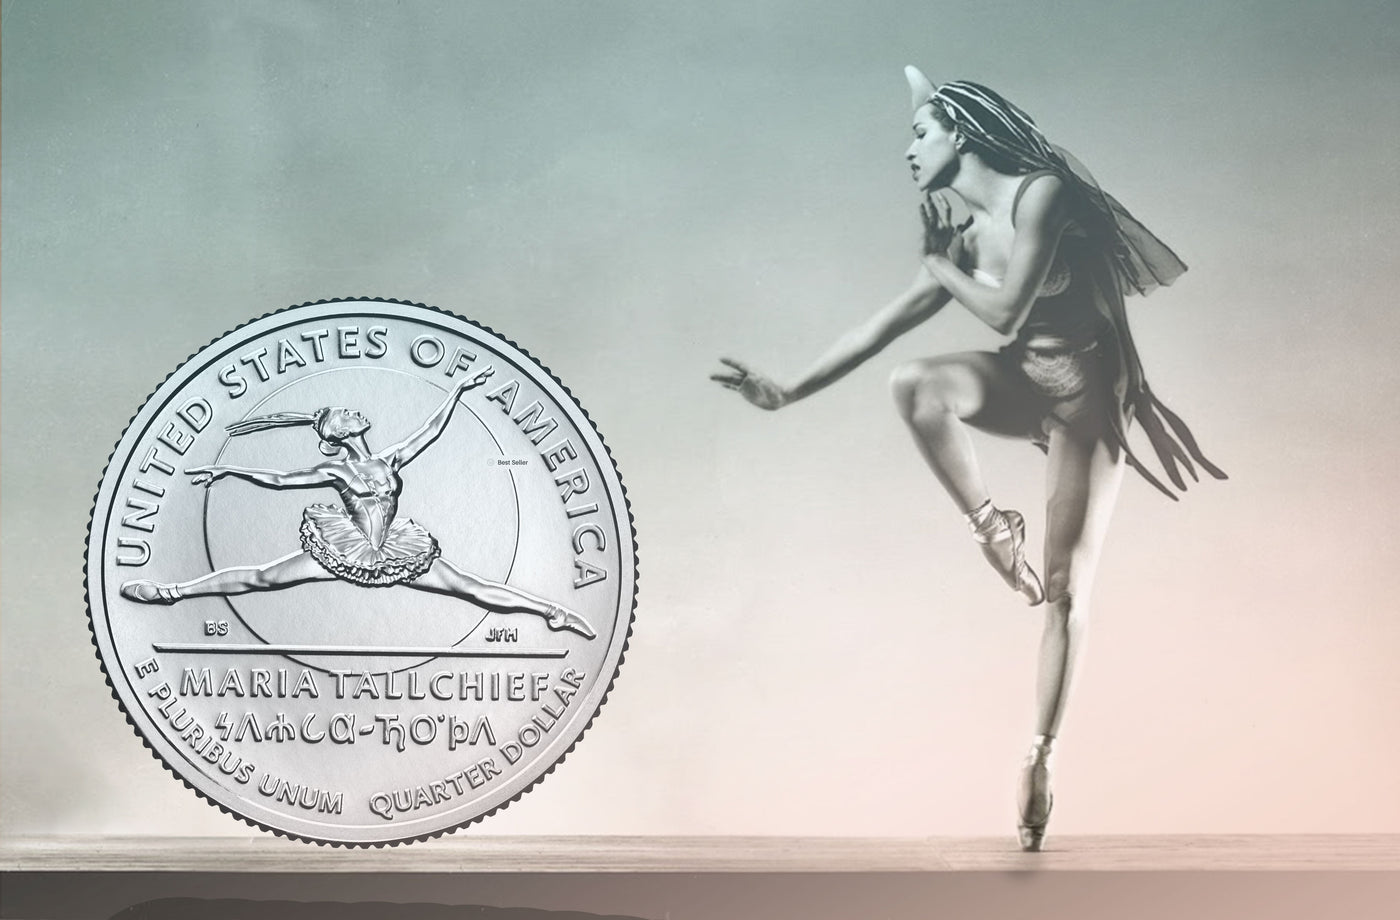 American Prima Ballerina, Maria Tallchief, on the American quarter